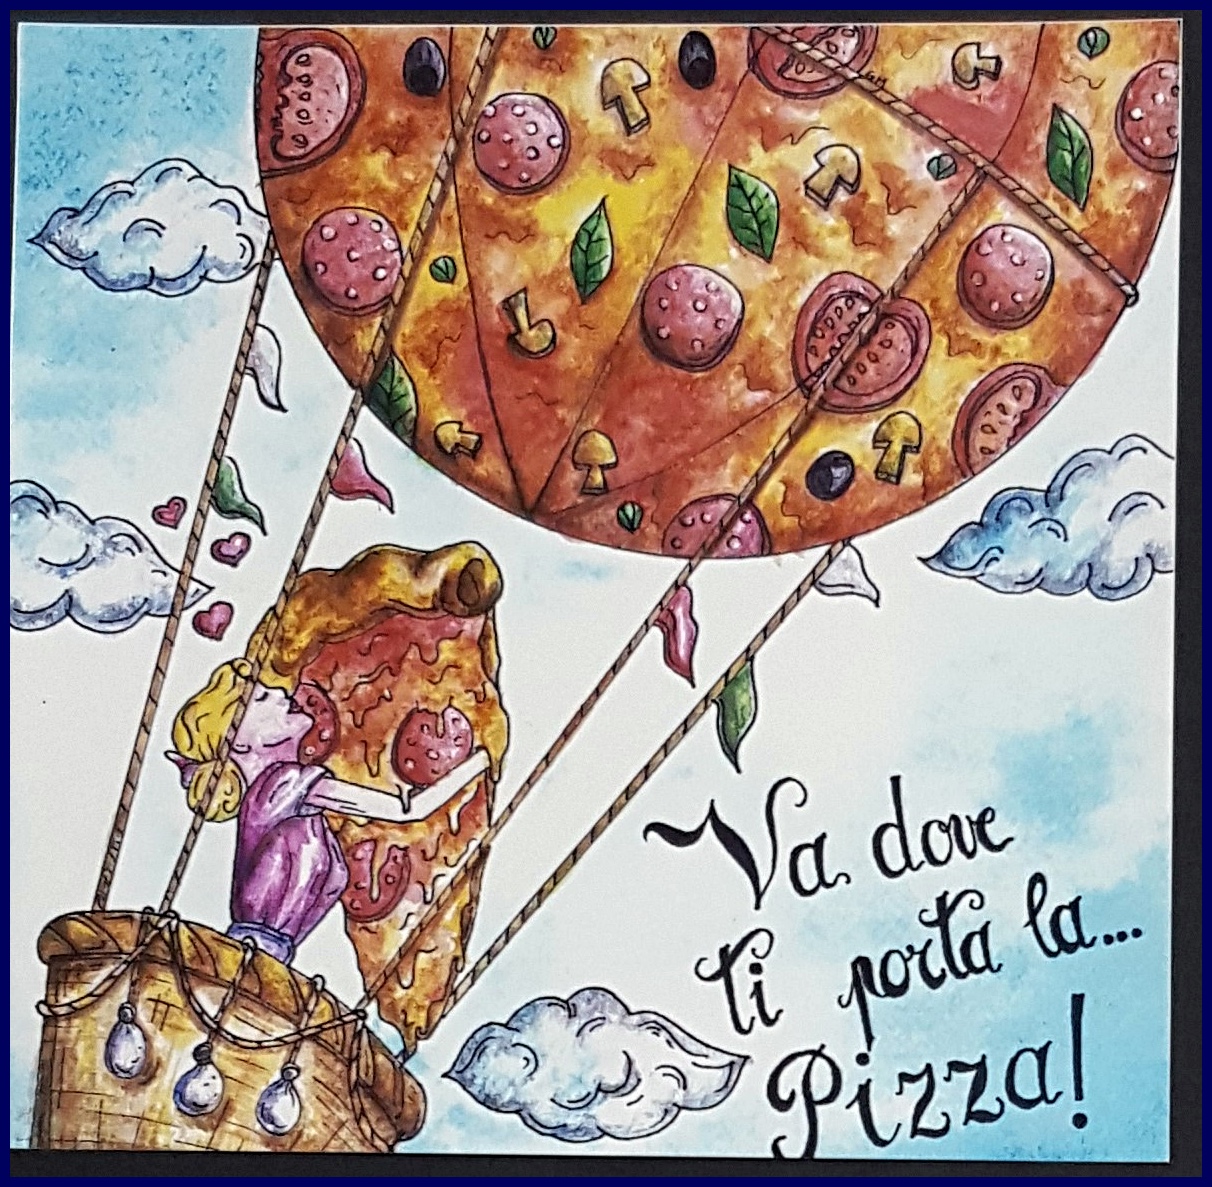 Nuova grafica cartoni pizza: Ondulor premia la creatività degli studenti